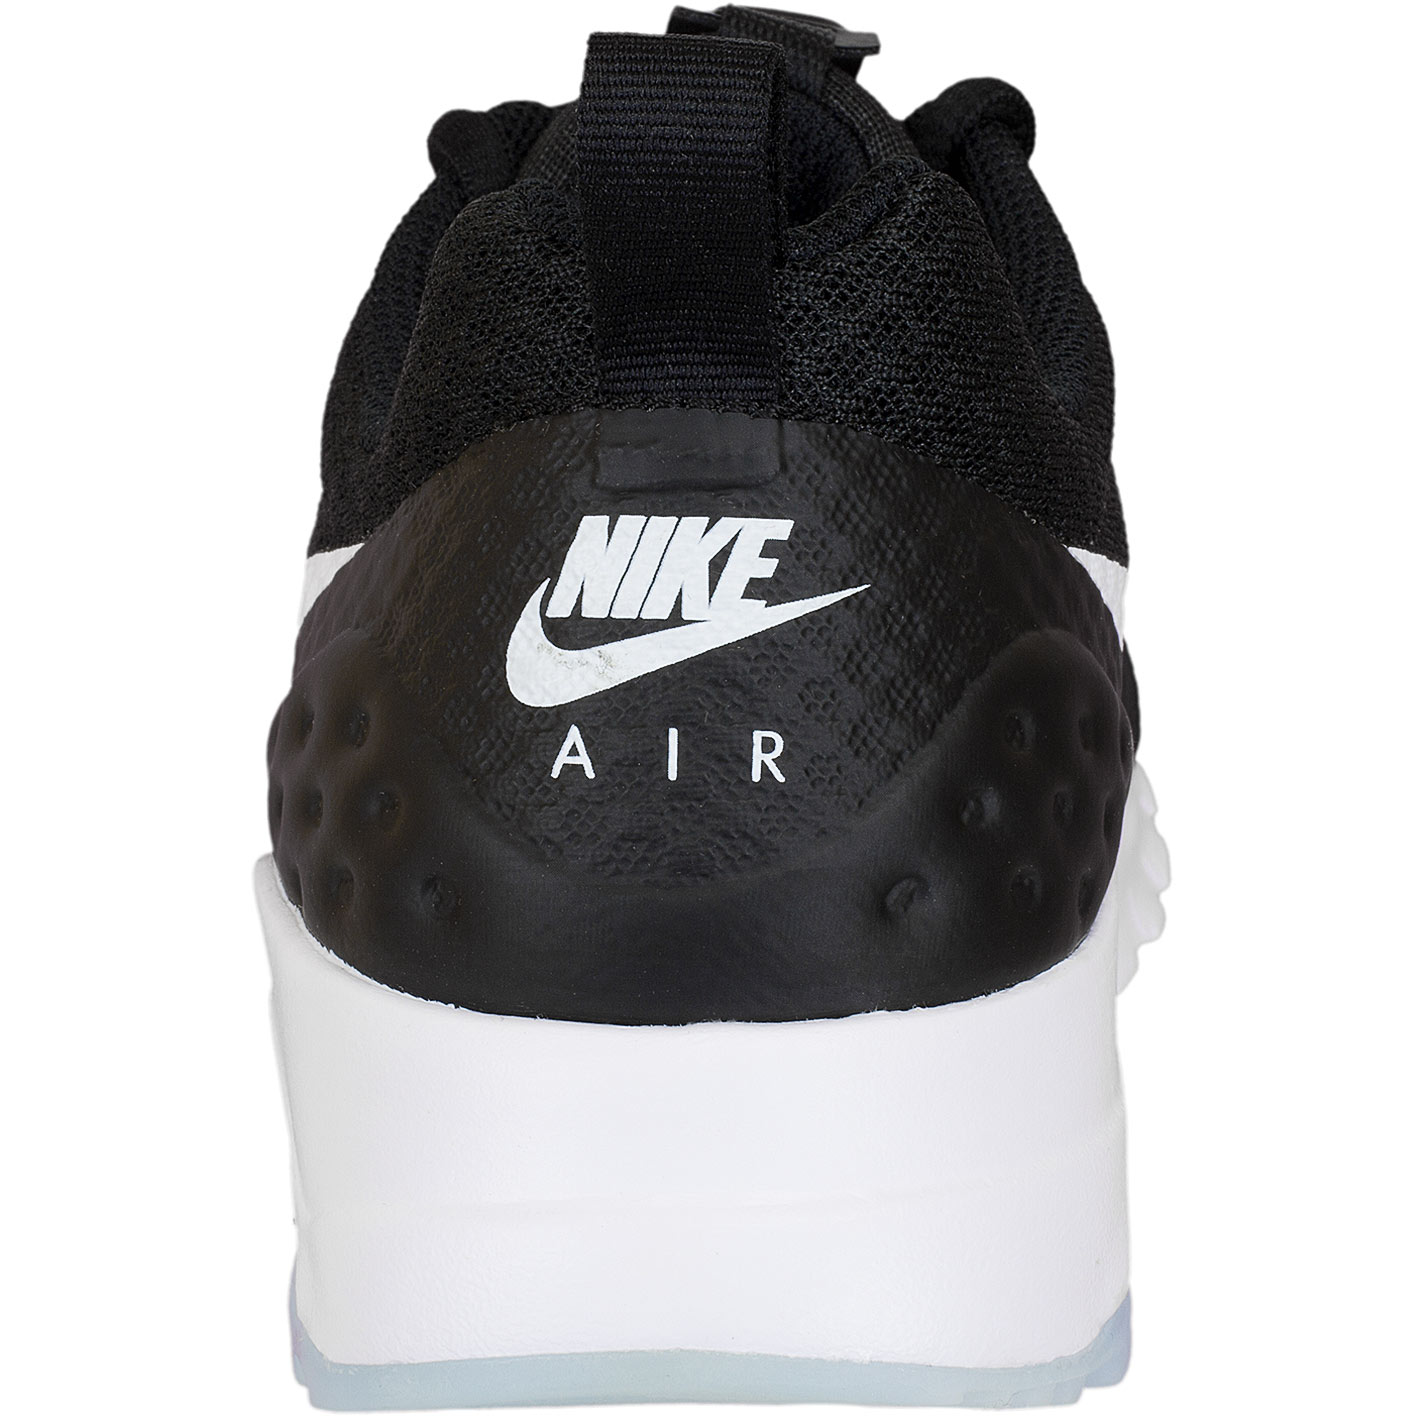 ☆ Nike Damen Sneaker Air Max Motion LW schwarz/weiß - hier bestellen!